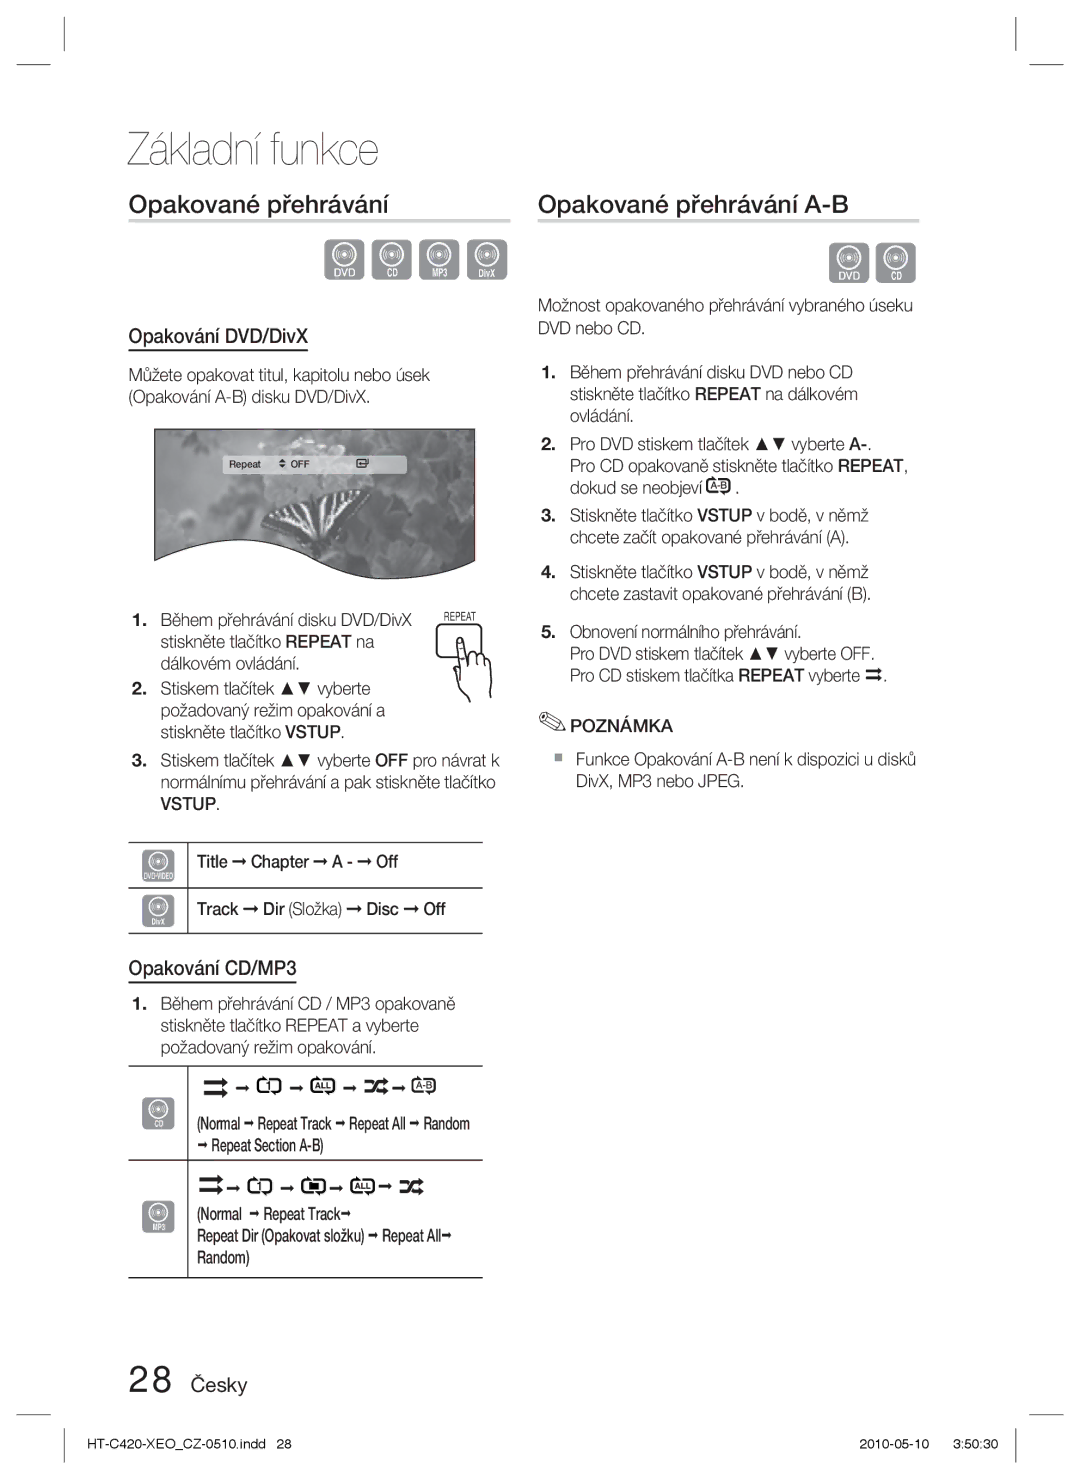 Samsung HT-C420/EDC manual Opakované přehrávání A-B, Opakování DVD/DivX, Opakování CD/MP3, 28 Česky 